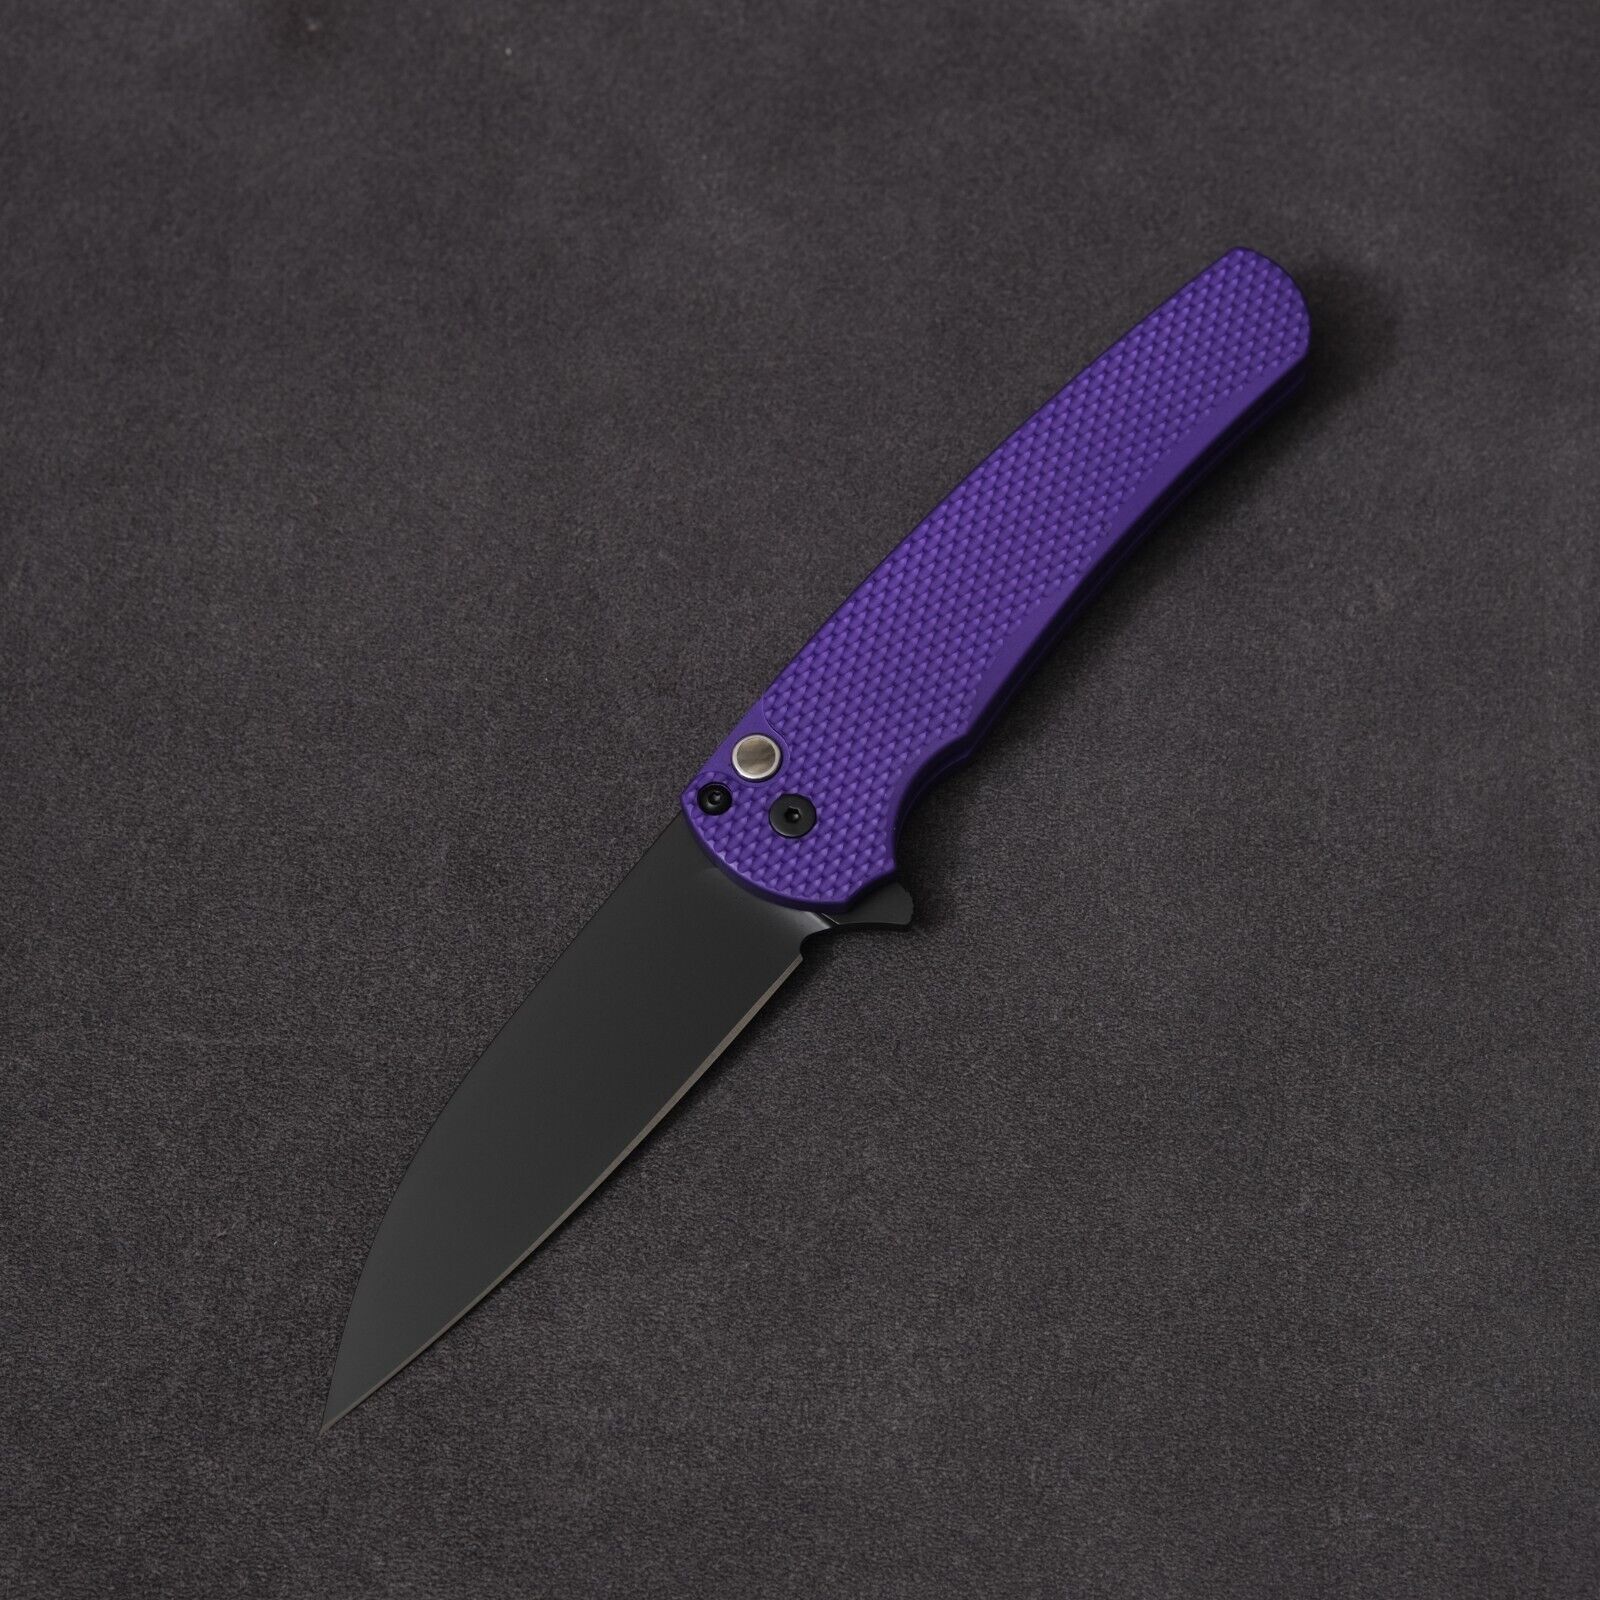 ProTech Malibu Blade Show West 2023 - Textured Purple / Black DLC / MagnaCut